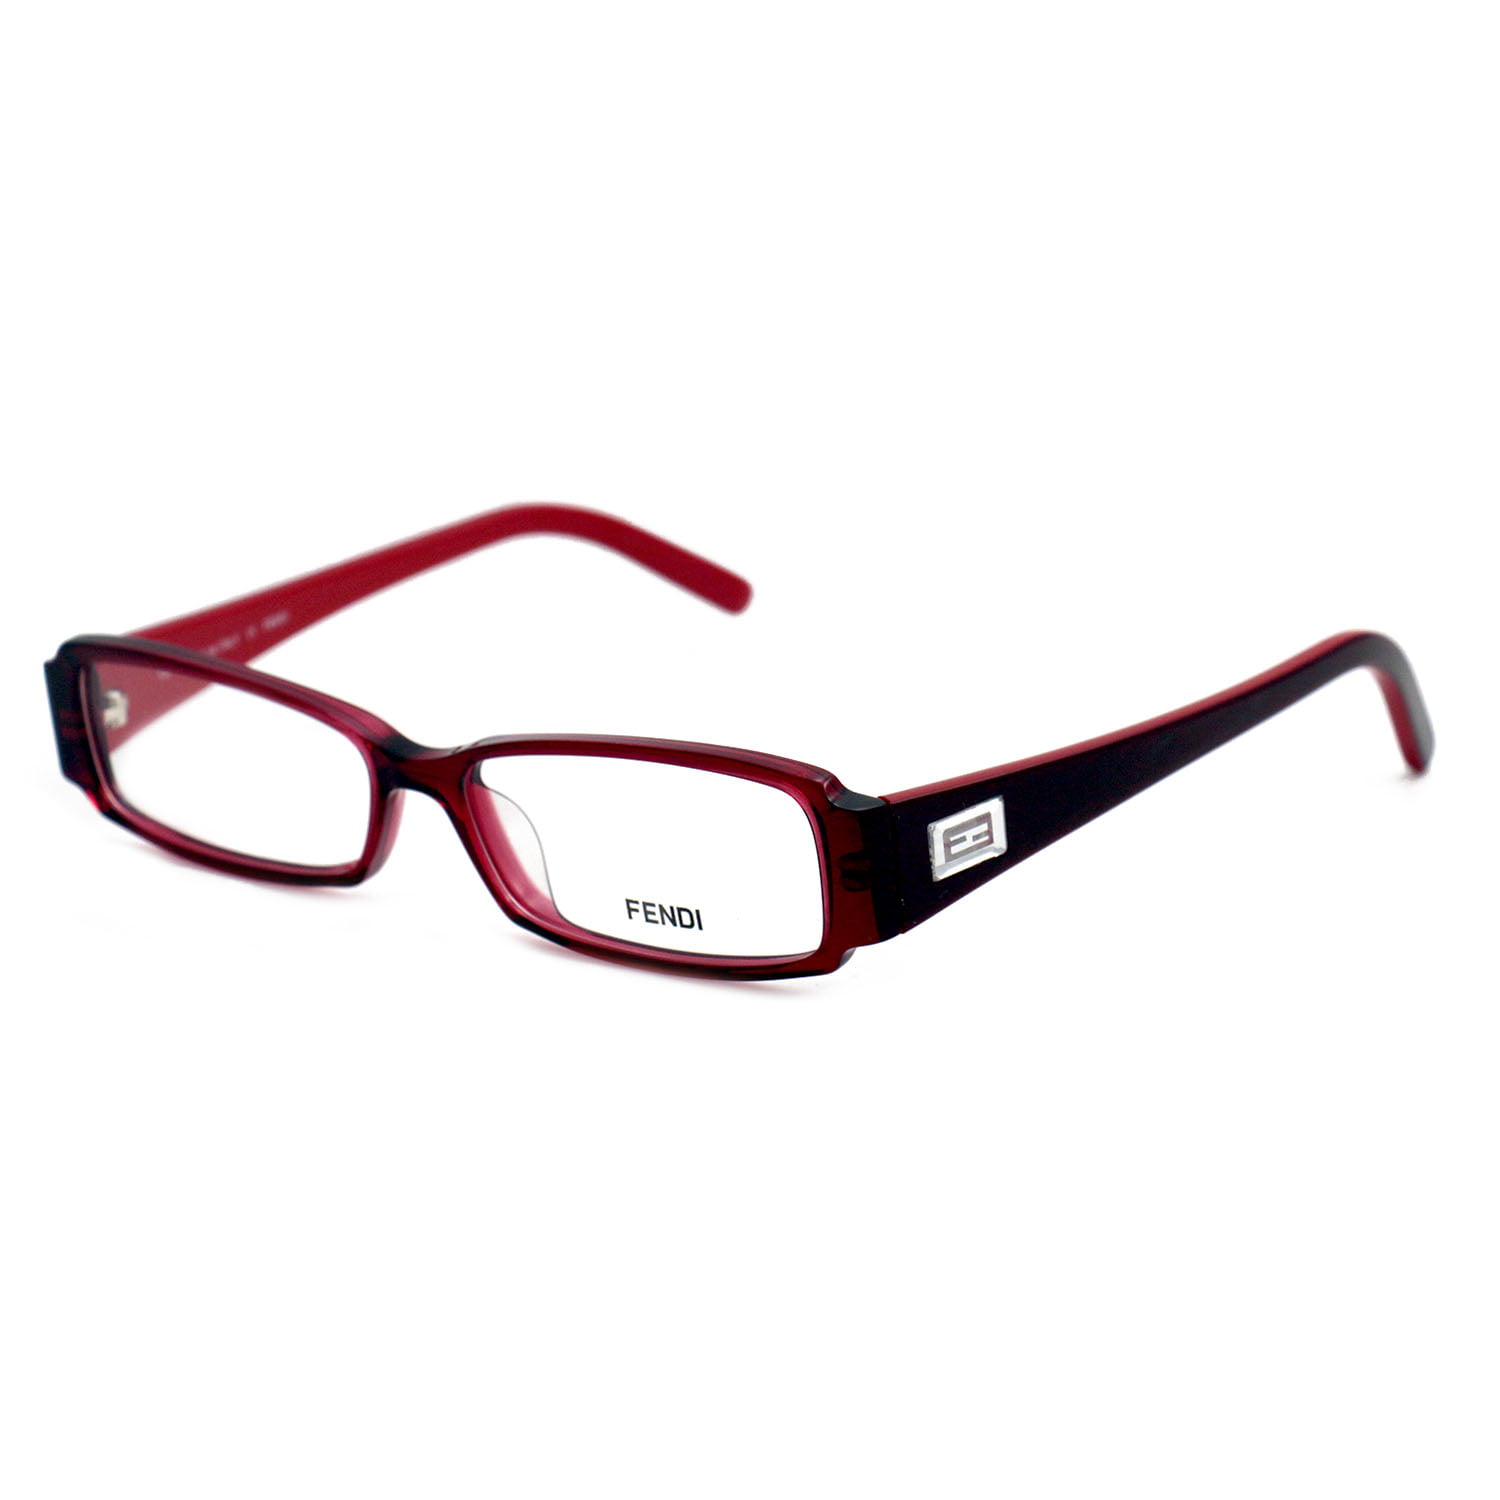 Fendi Eyeglasses Womens Red Frames Rectangle 52 14 135 F891 615 ...